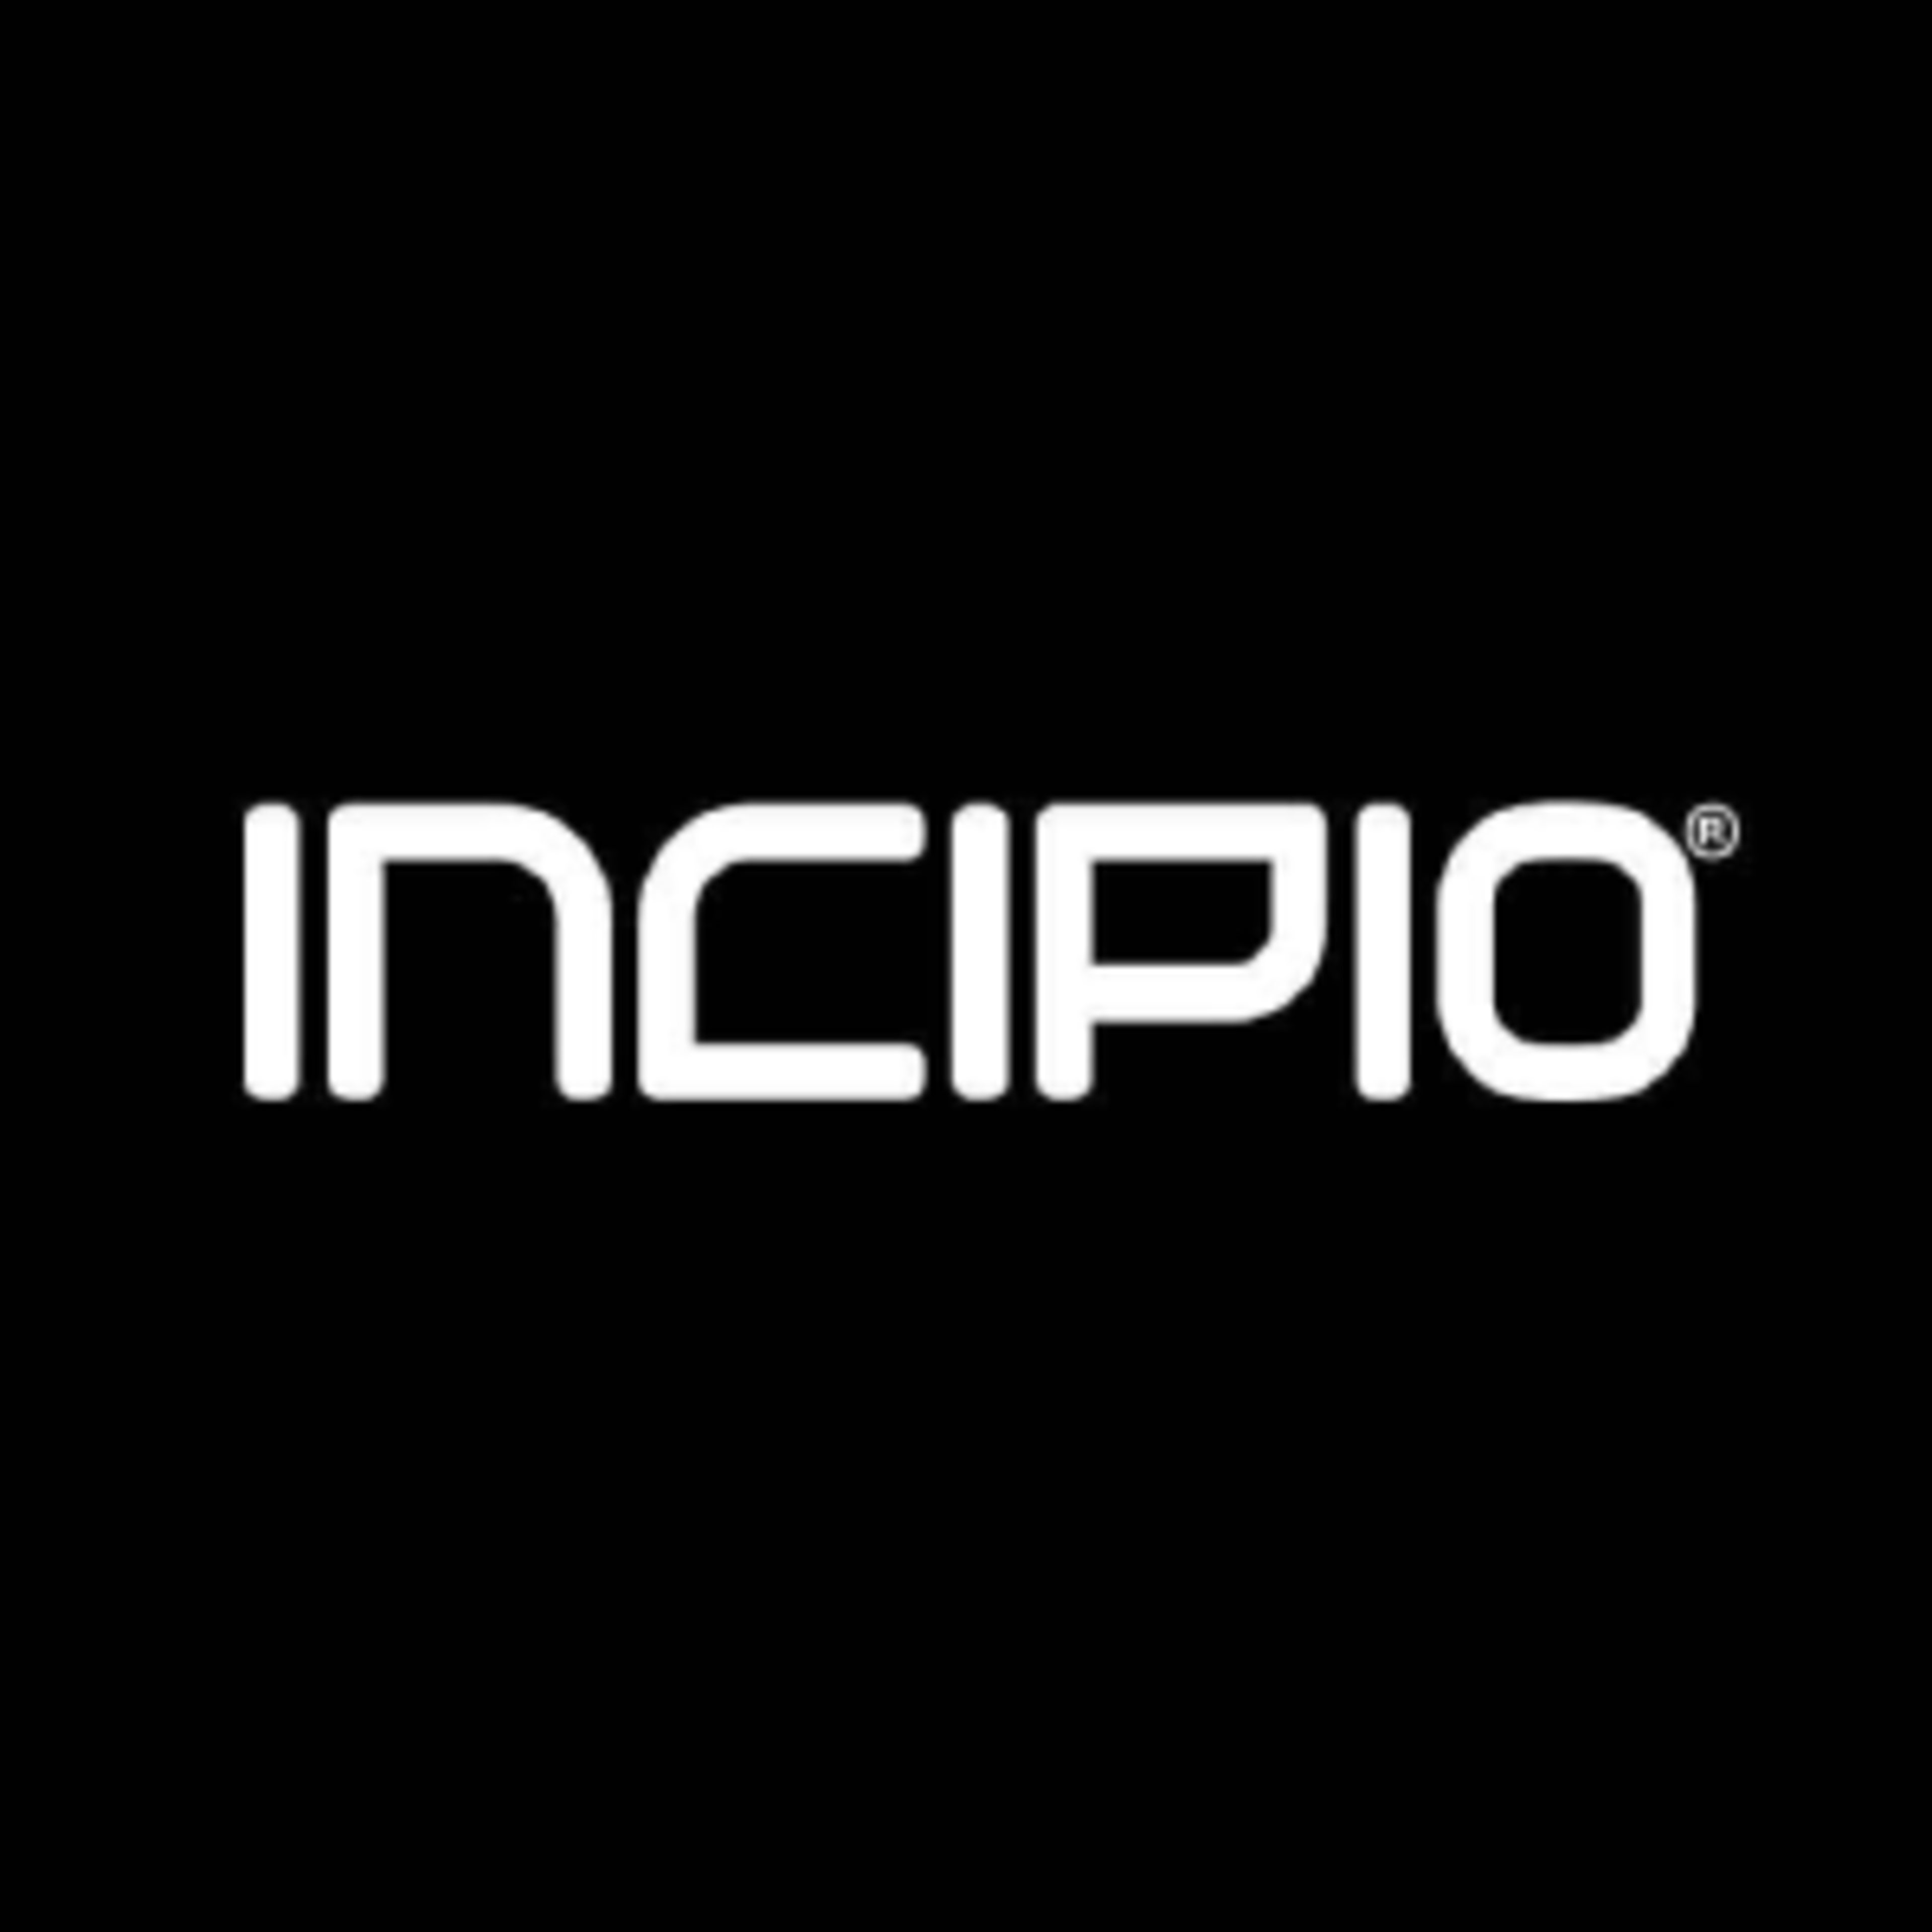 Incipio.com Code